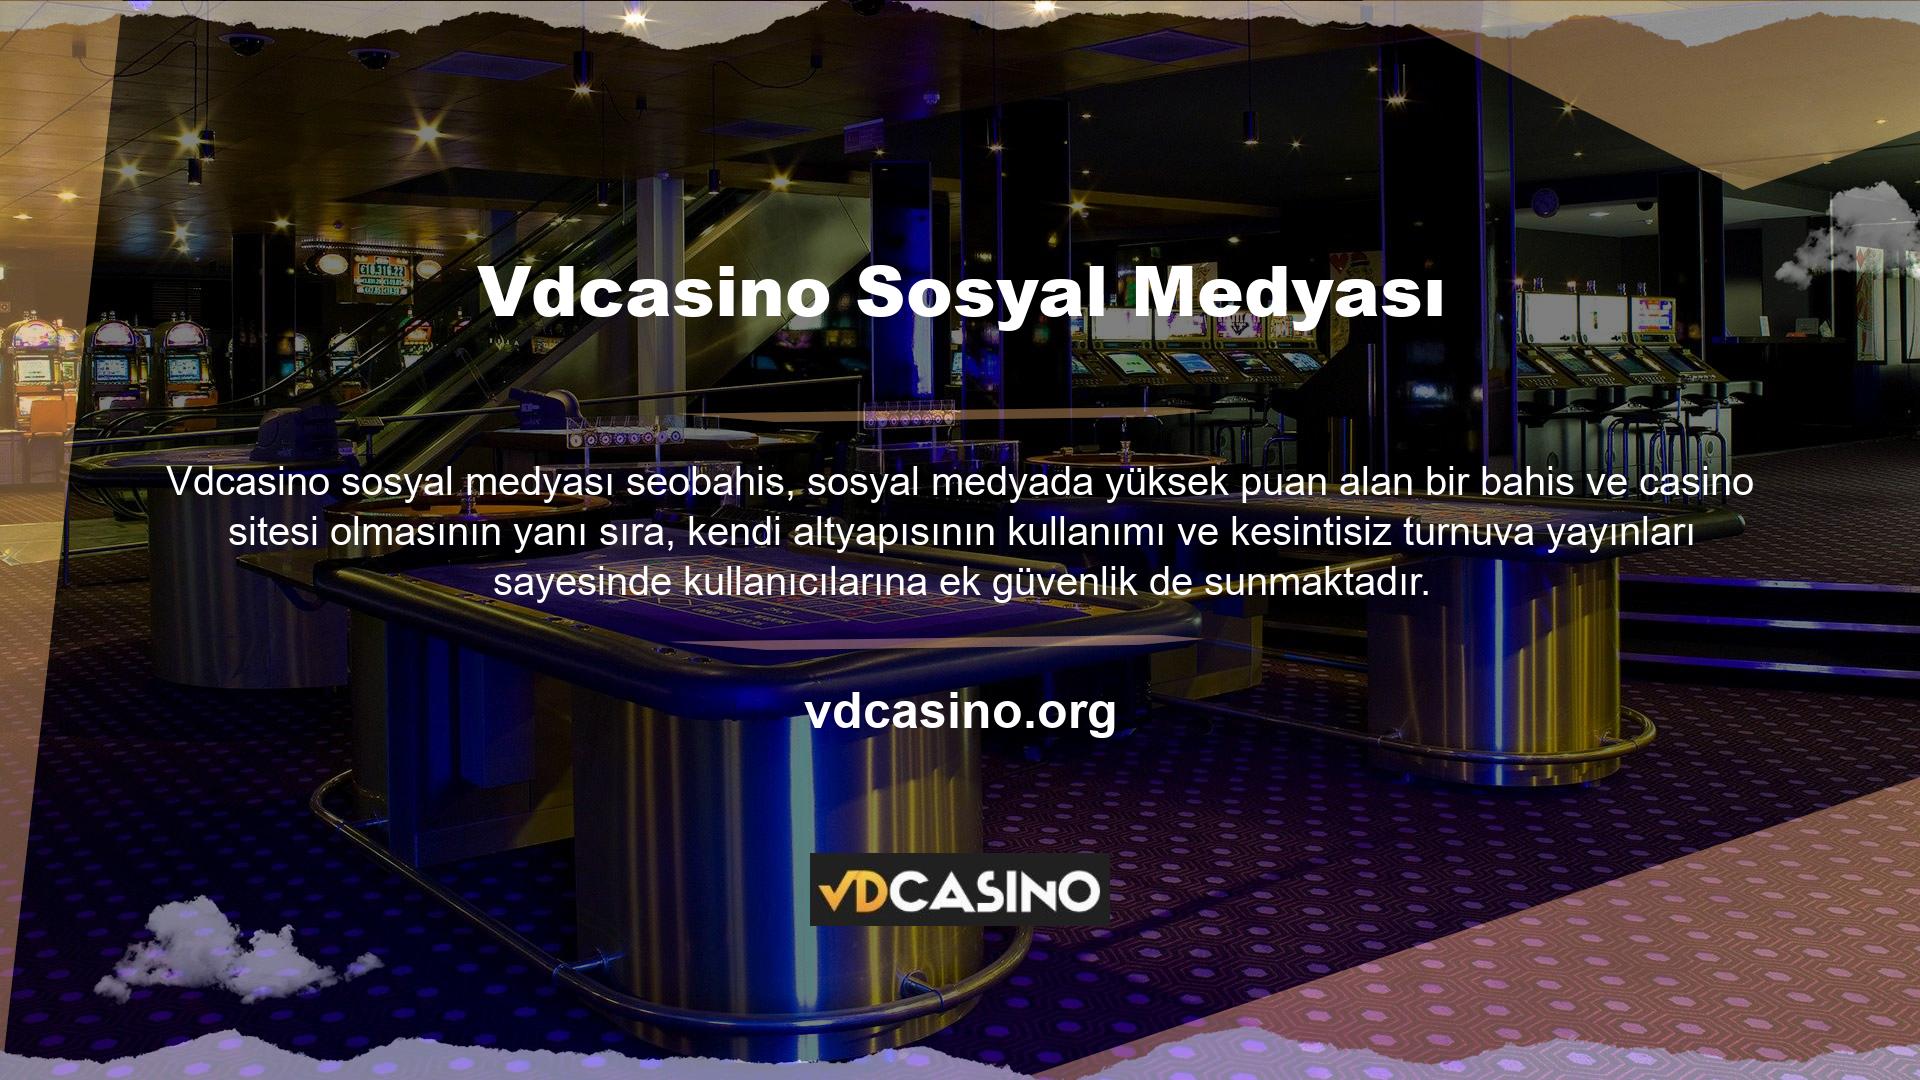 Yıllar içerisinde ülkemize gelen yüzlerce bahis ve casino sitesi arasında Vdcasino pazardaki yerini korumuştur